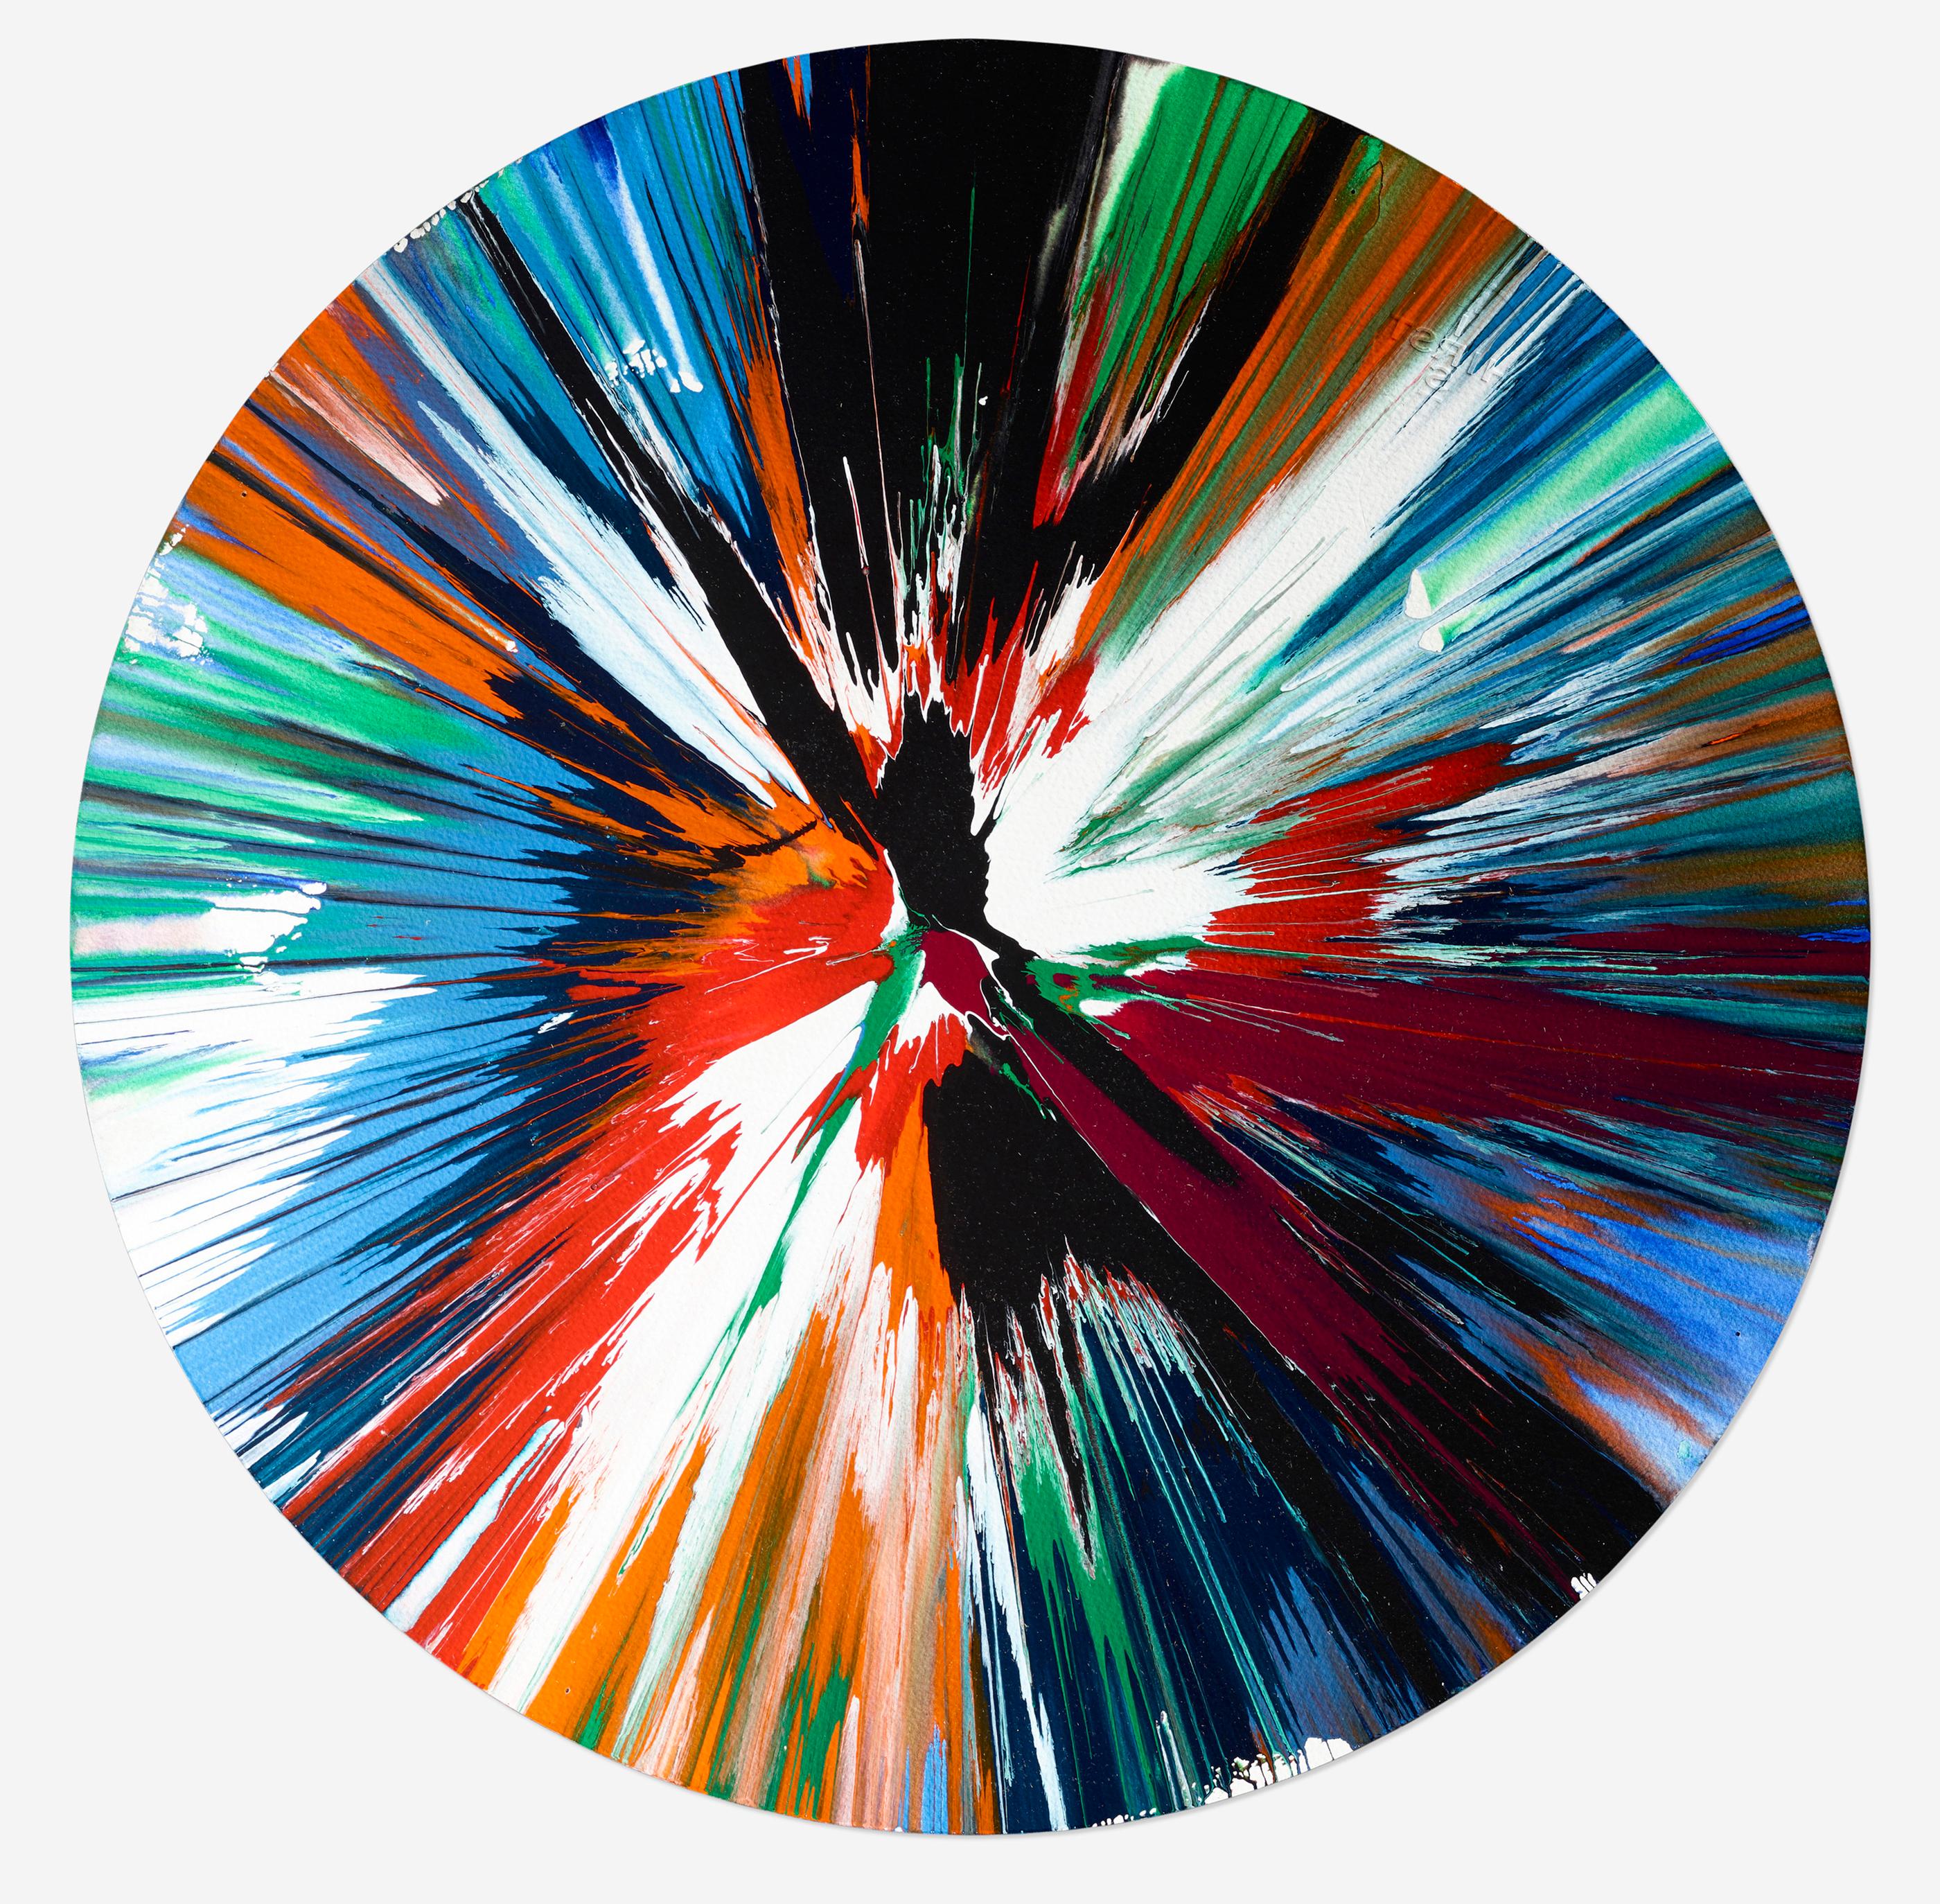 Damien Hirst Spin Painting, 2009 (Damien Hirst Circle):
Ein faszinierendes Damien Hirst Spin-Gemälde mit Explosionen von lebendigen Farben inmitten der zeitlosen, geheimnisvollen Form eines herausragenden Hirst-Kreises. Dieses Damien Hirst